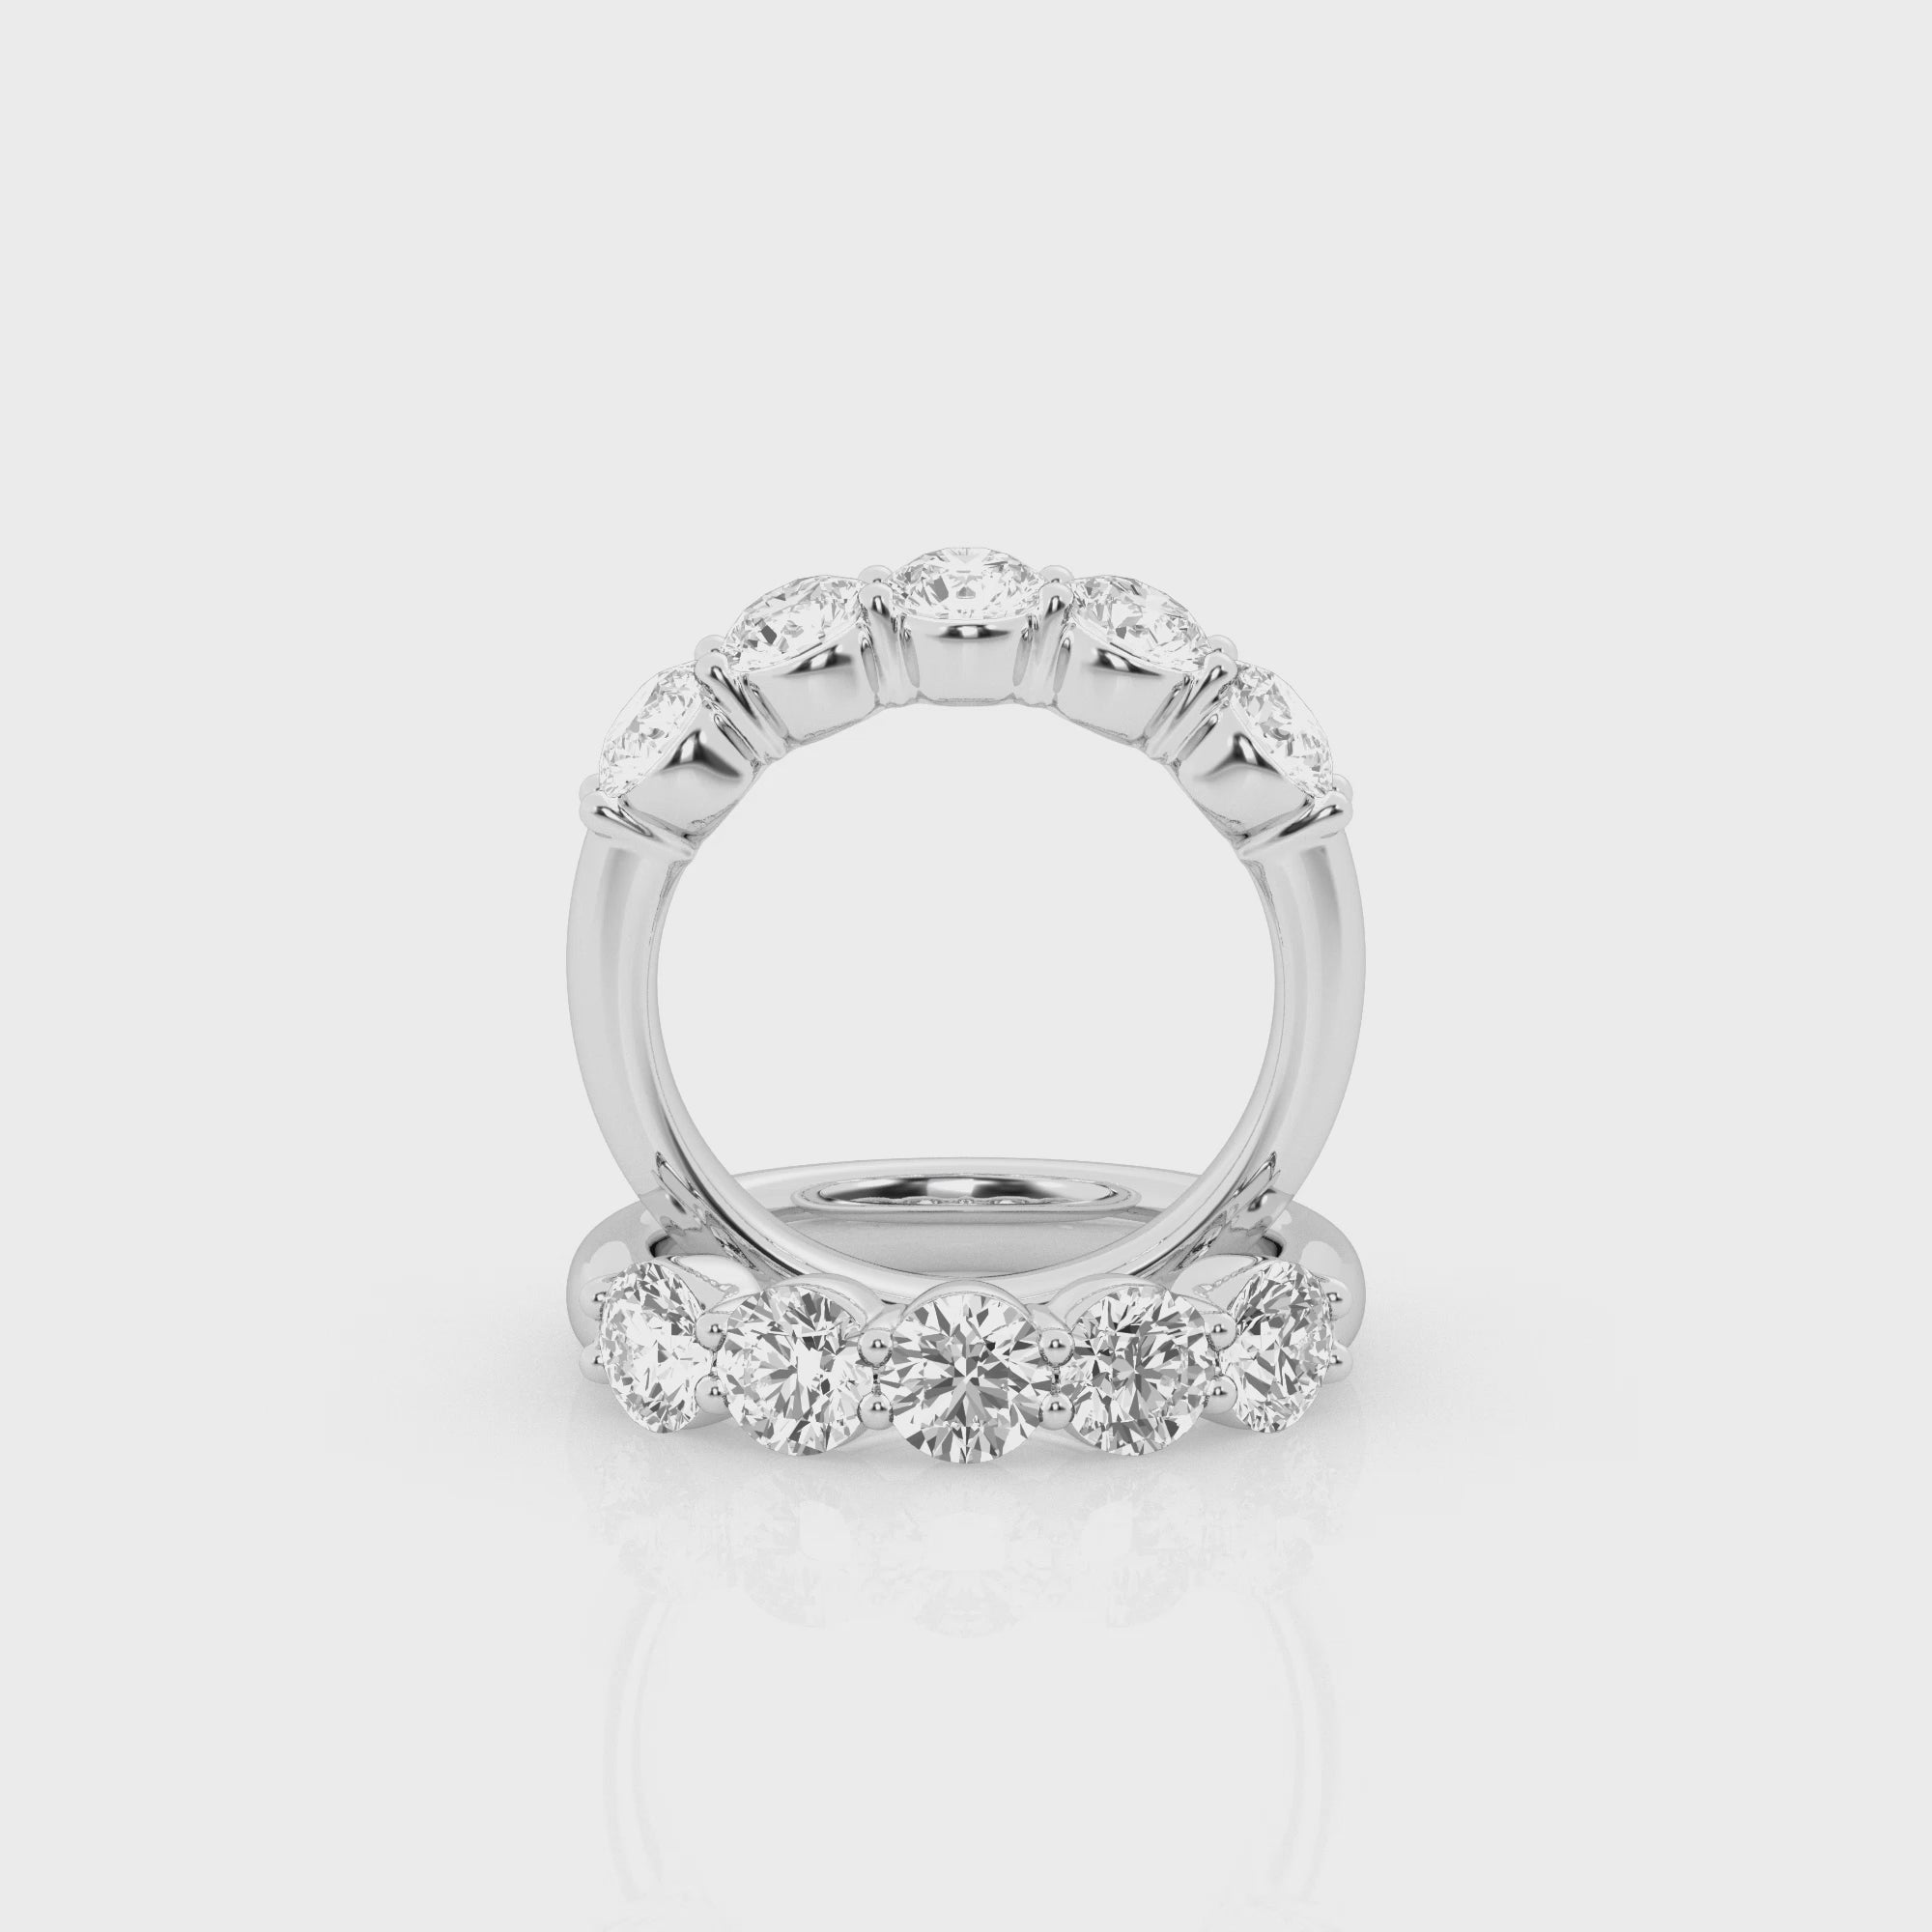 2 carat Round Five Stone Diamond Rings